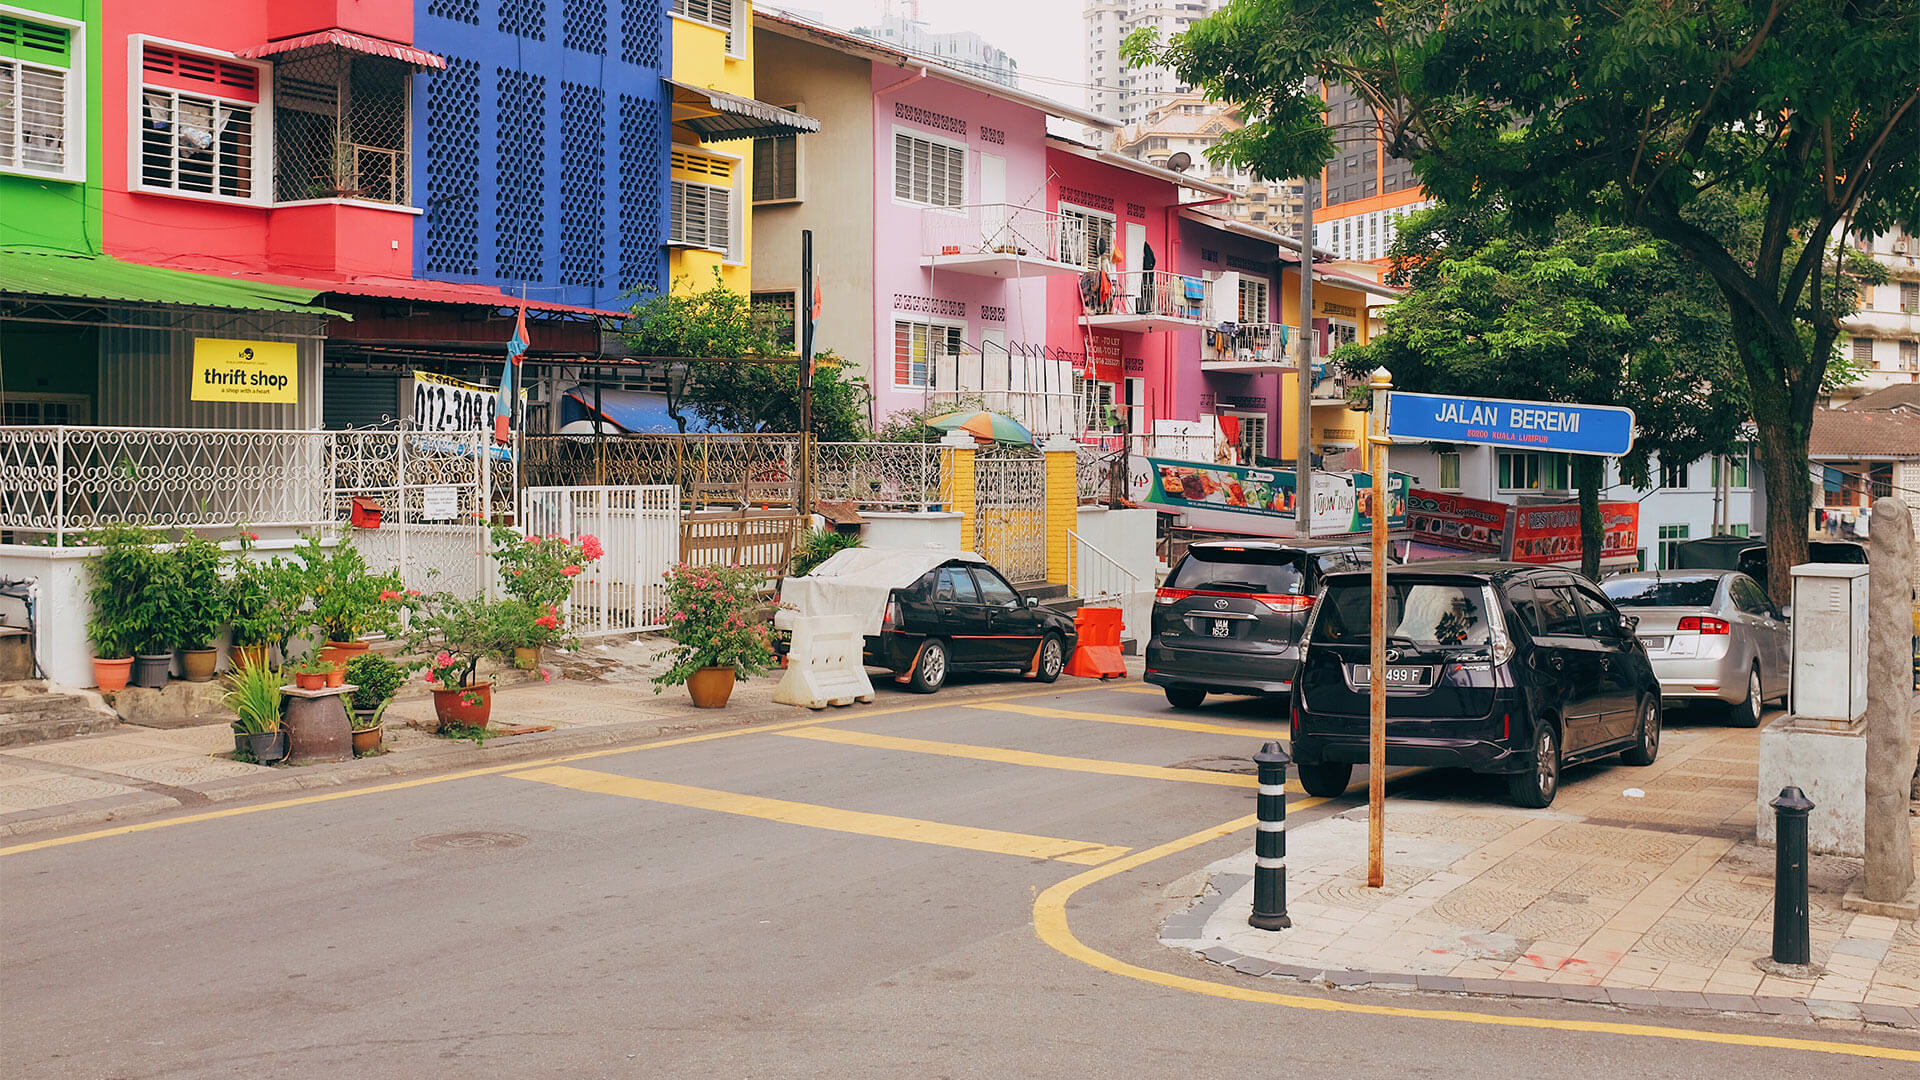 Street view of Jalan Beremi road in Bukit Bintang